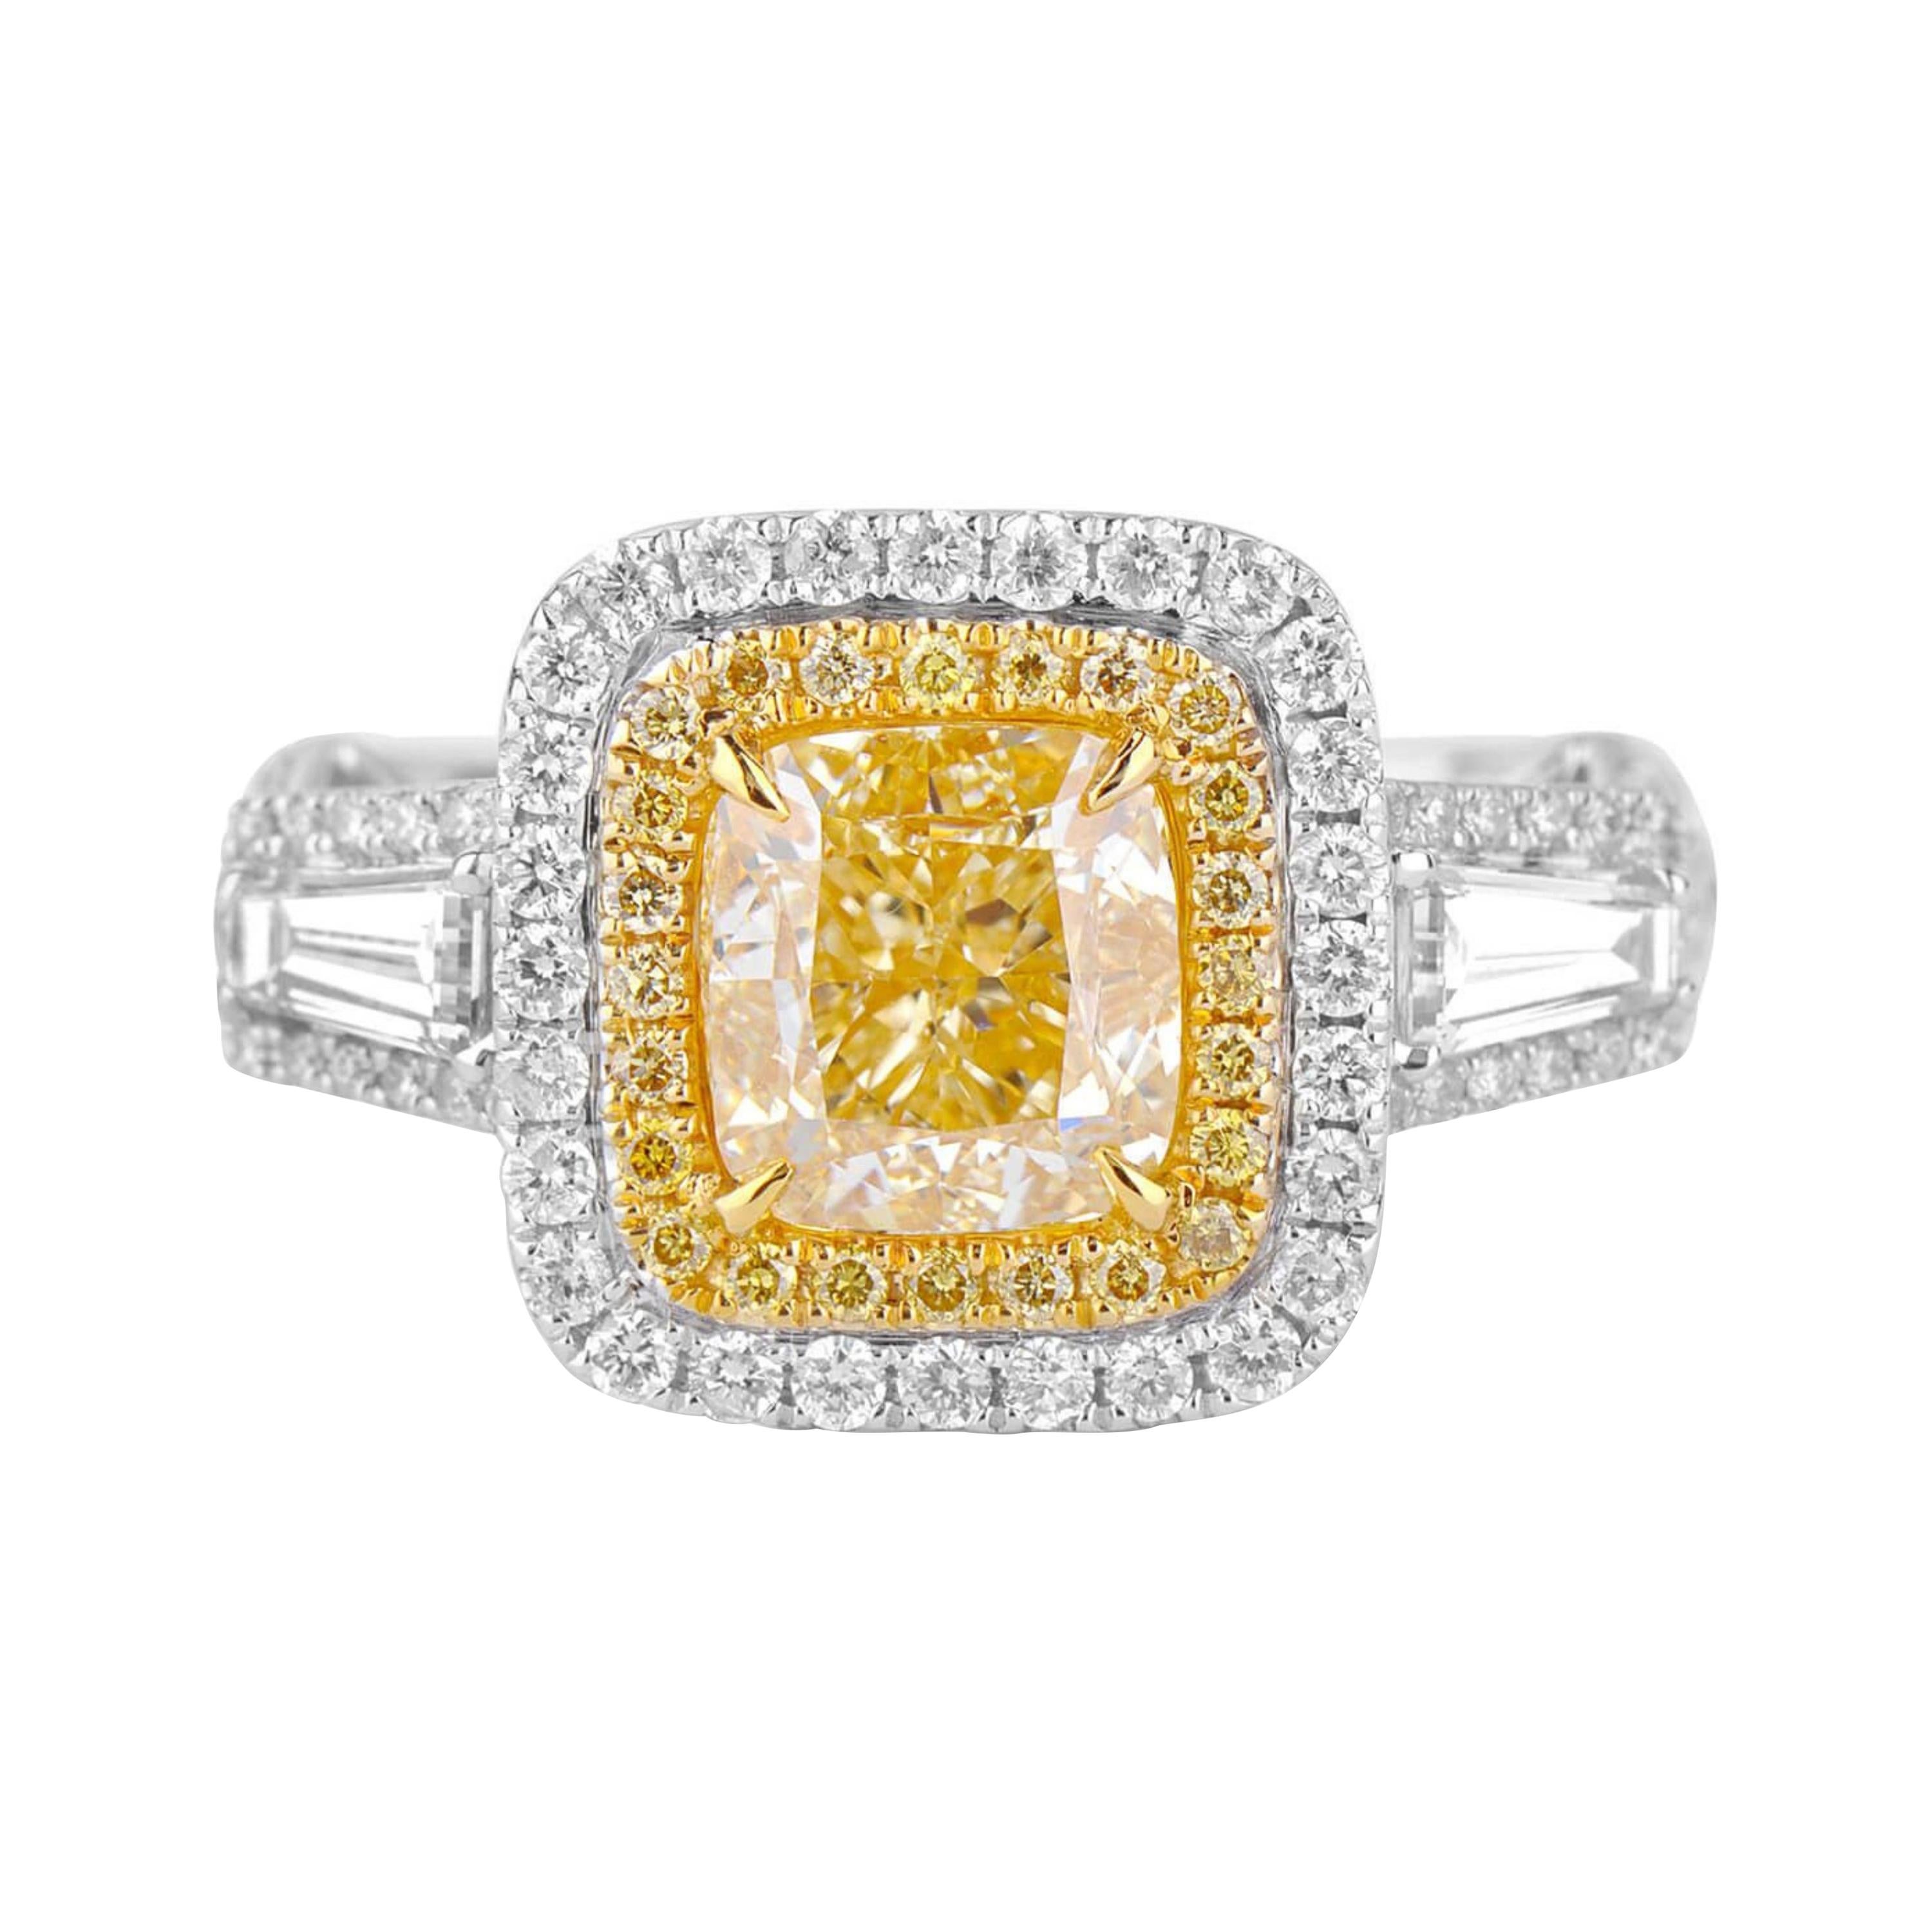 2 Carat Fancy Yellow Diamond Ring 18 Karat White Gold For Sale